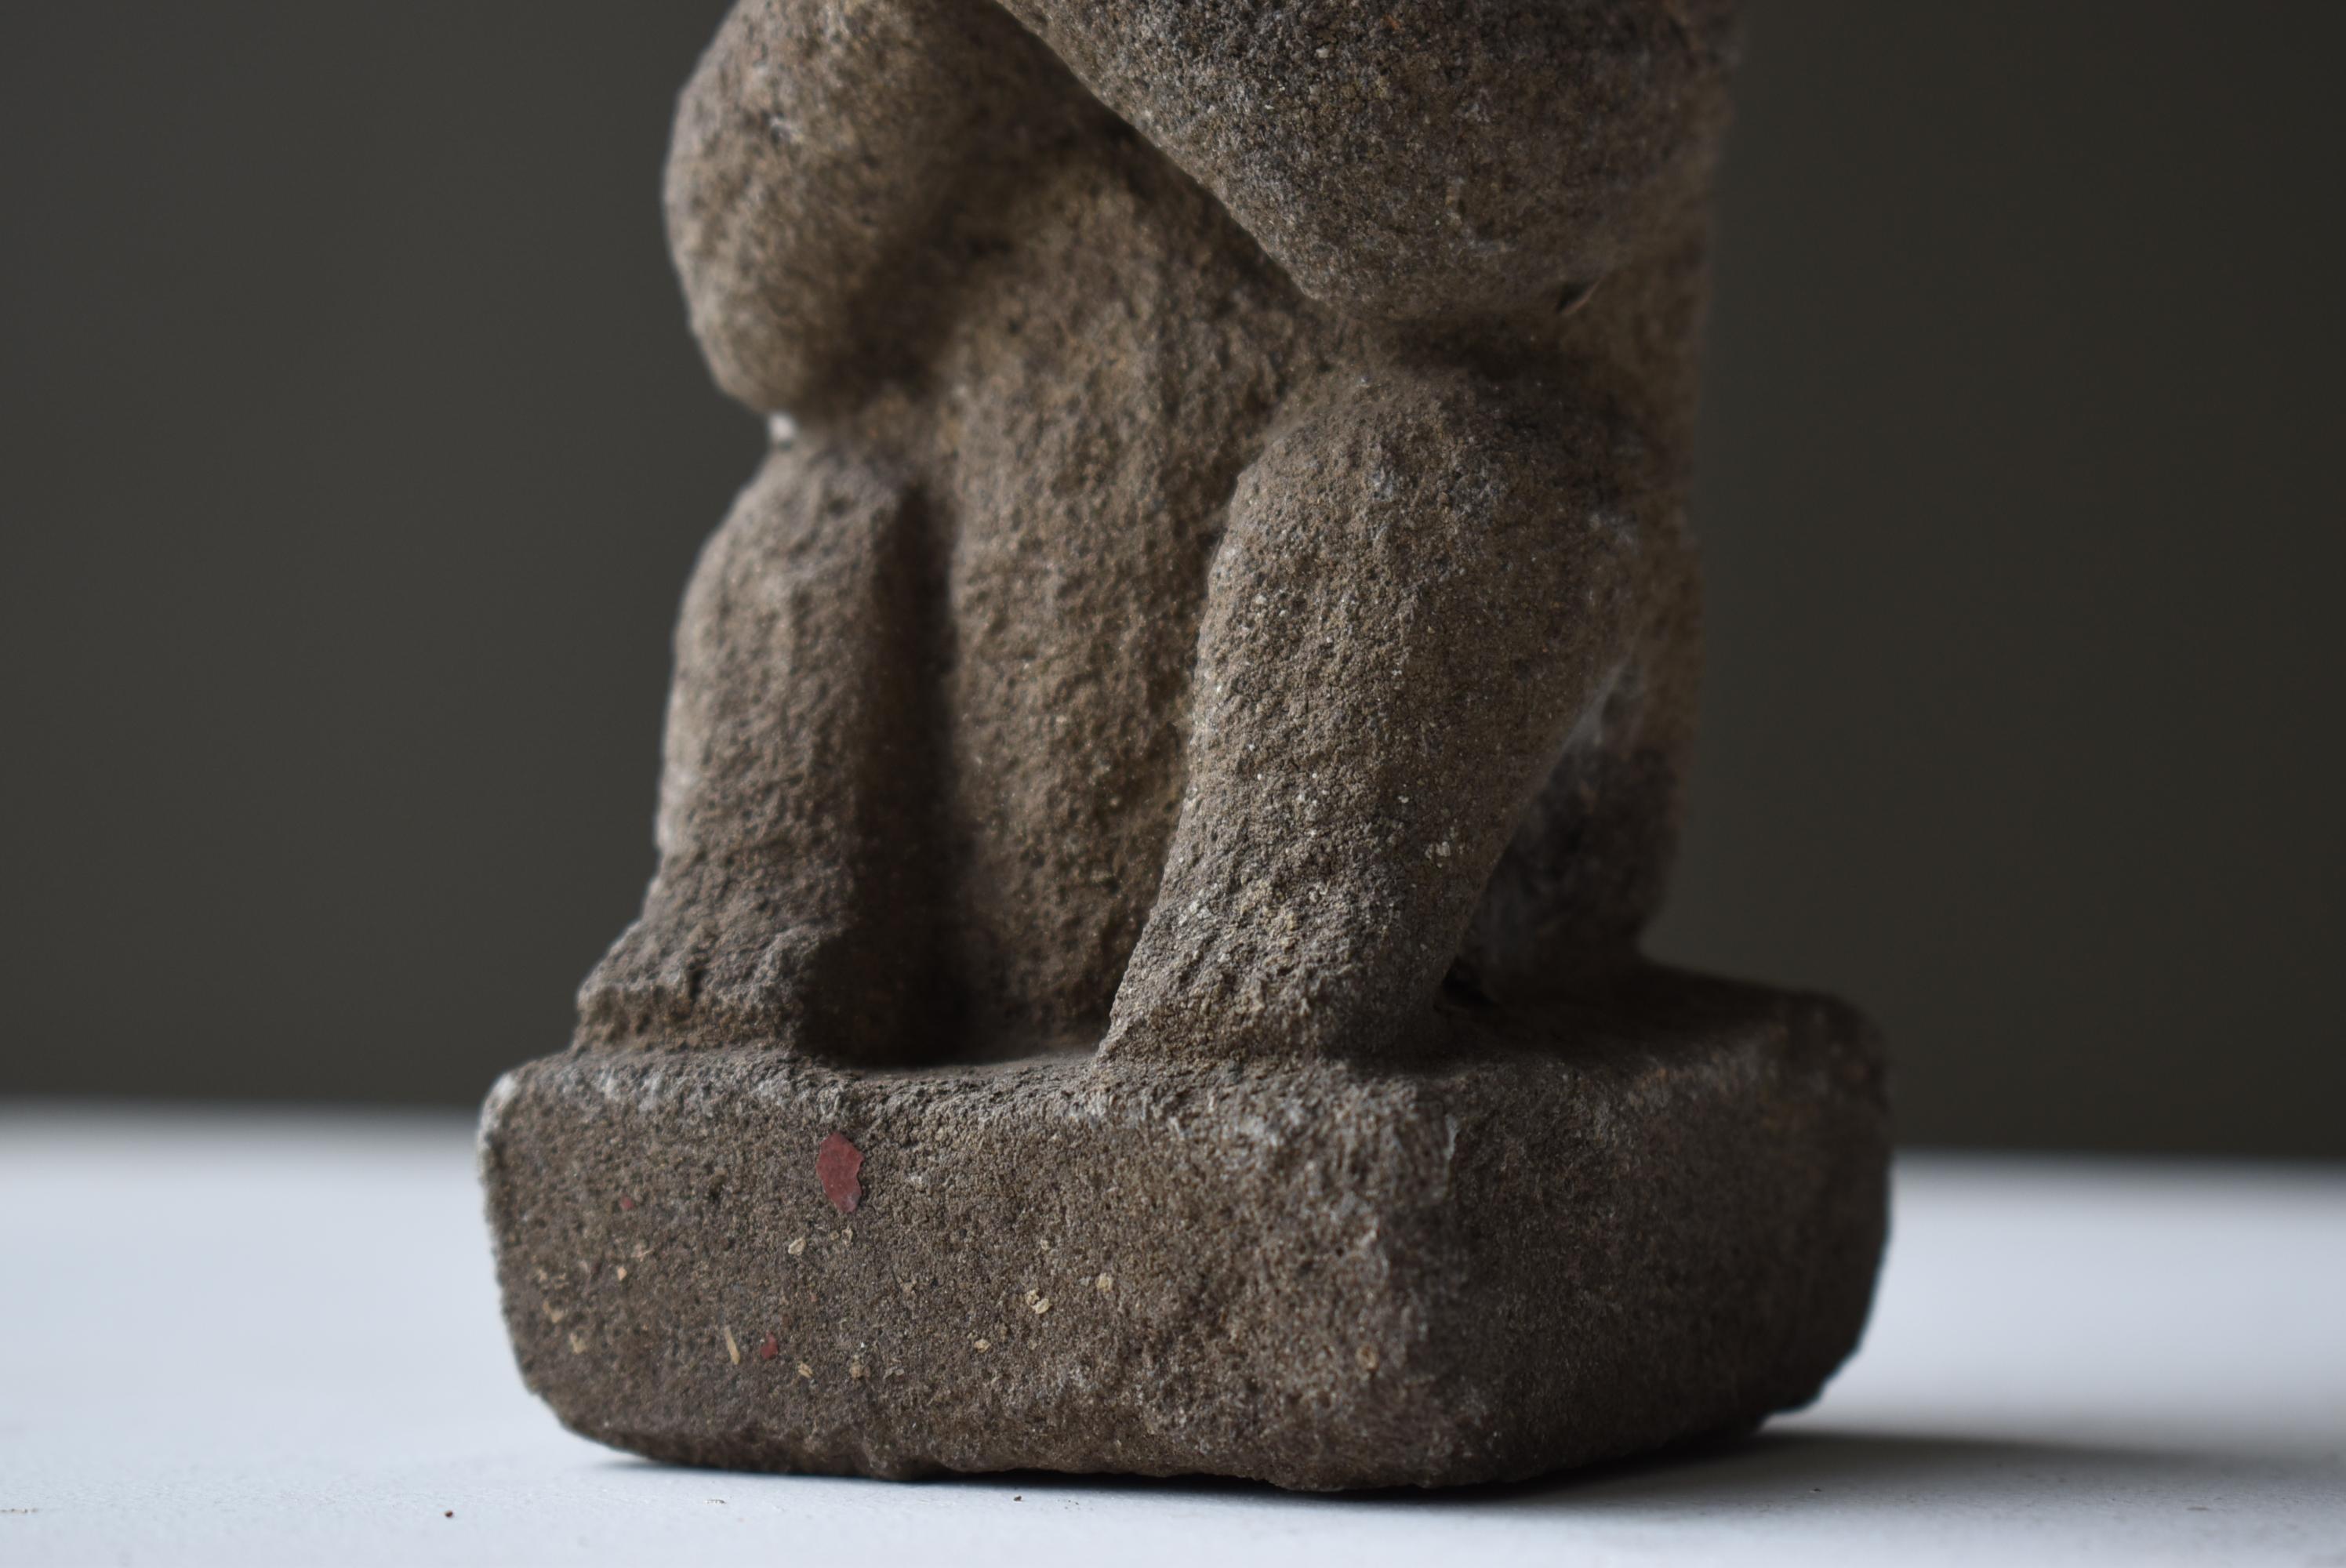 19th Century Japanese Antique Stone Craving Monkey 1800s-1860s / Buddhist Art Object Wabisabi